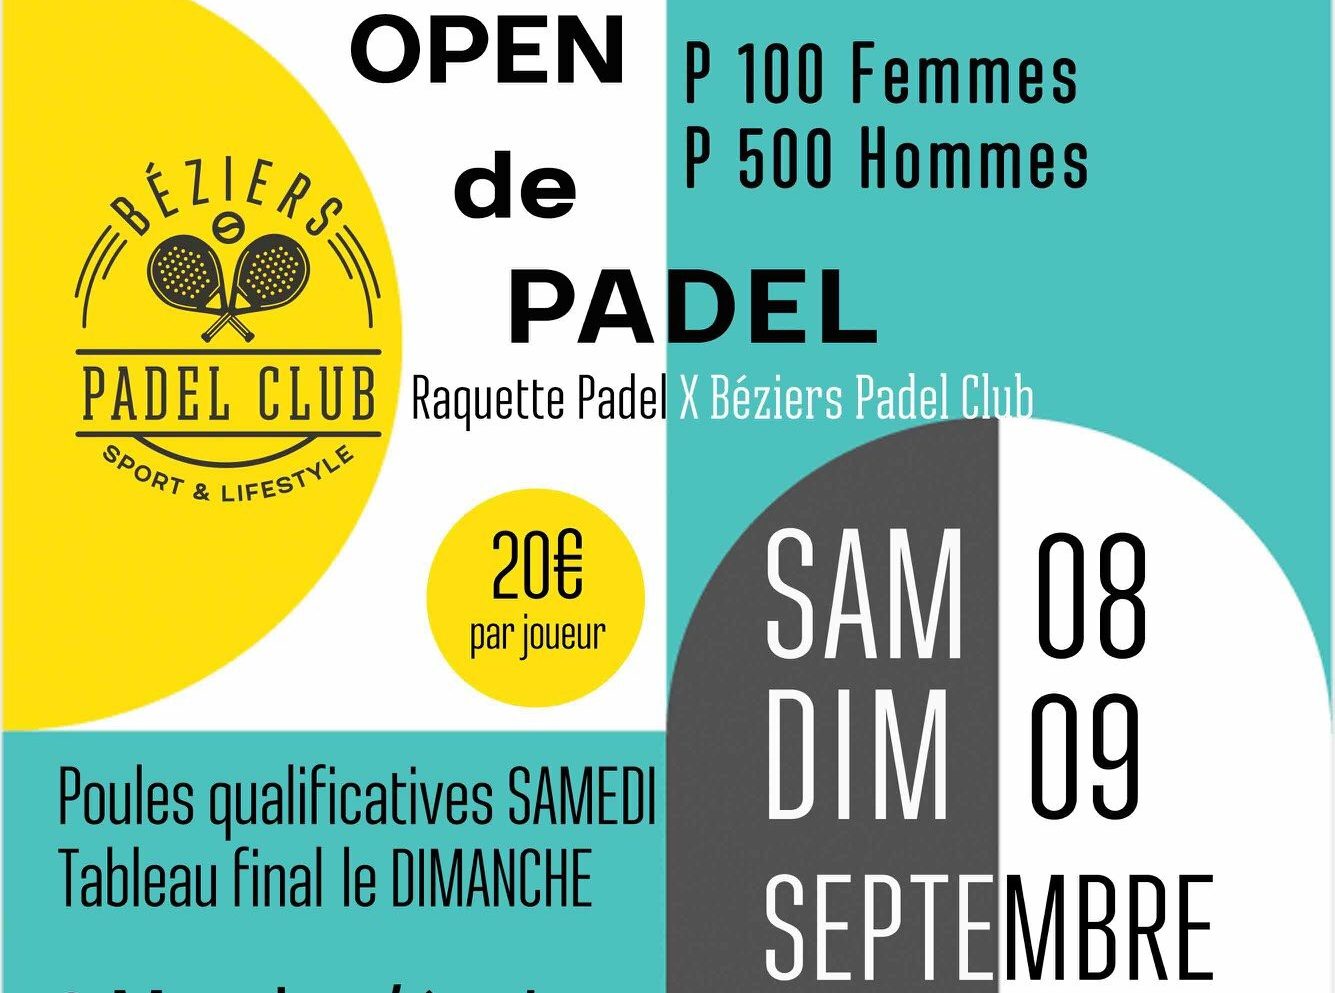 Béziers Padel Klubben erbjuder sin första stora turnering padel